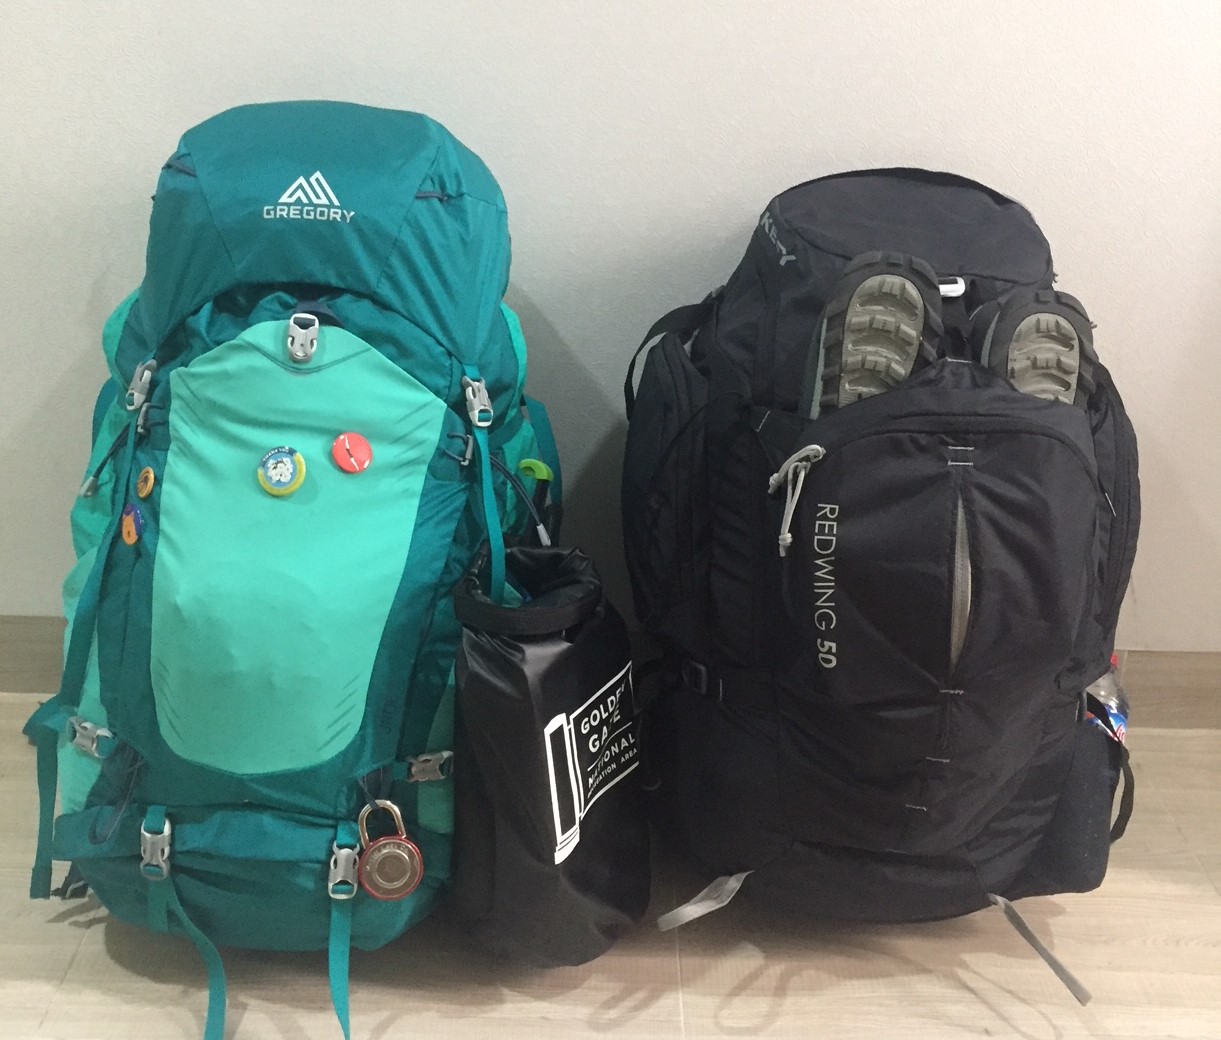 Backpacking bacpacks